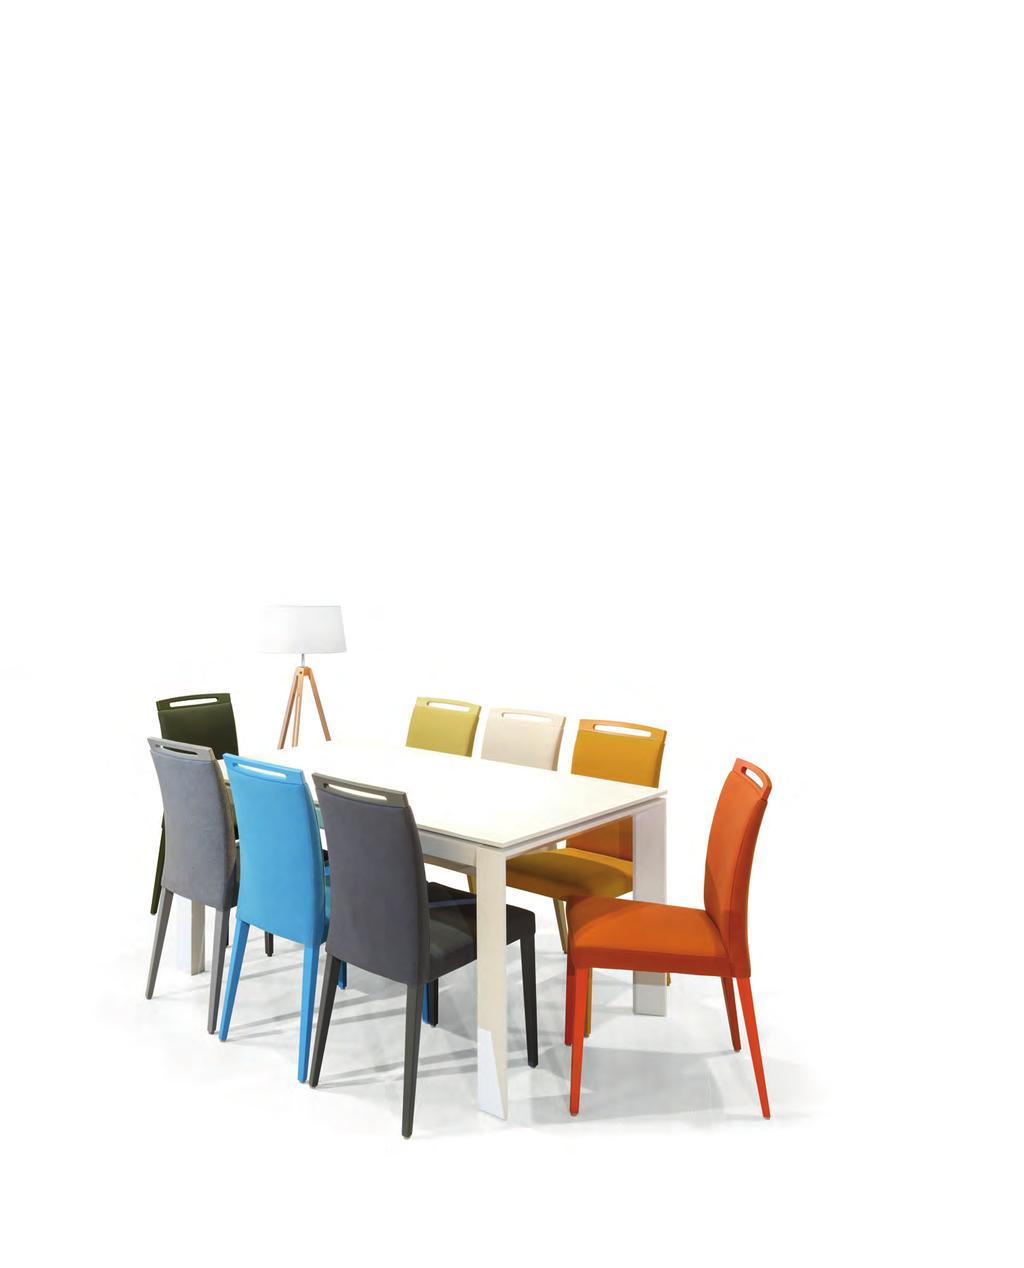 Grupy stołowe Klose 2016 Krzesła przyszłości Krzesła S44 to krzesła przyszłości. Stylowe i eleganckie w modnych kolorach.